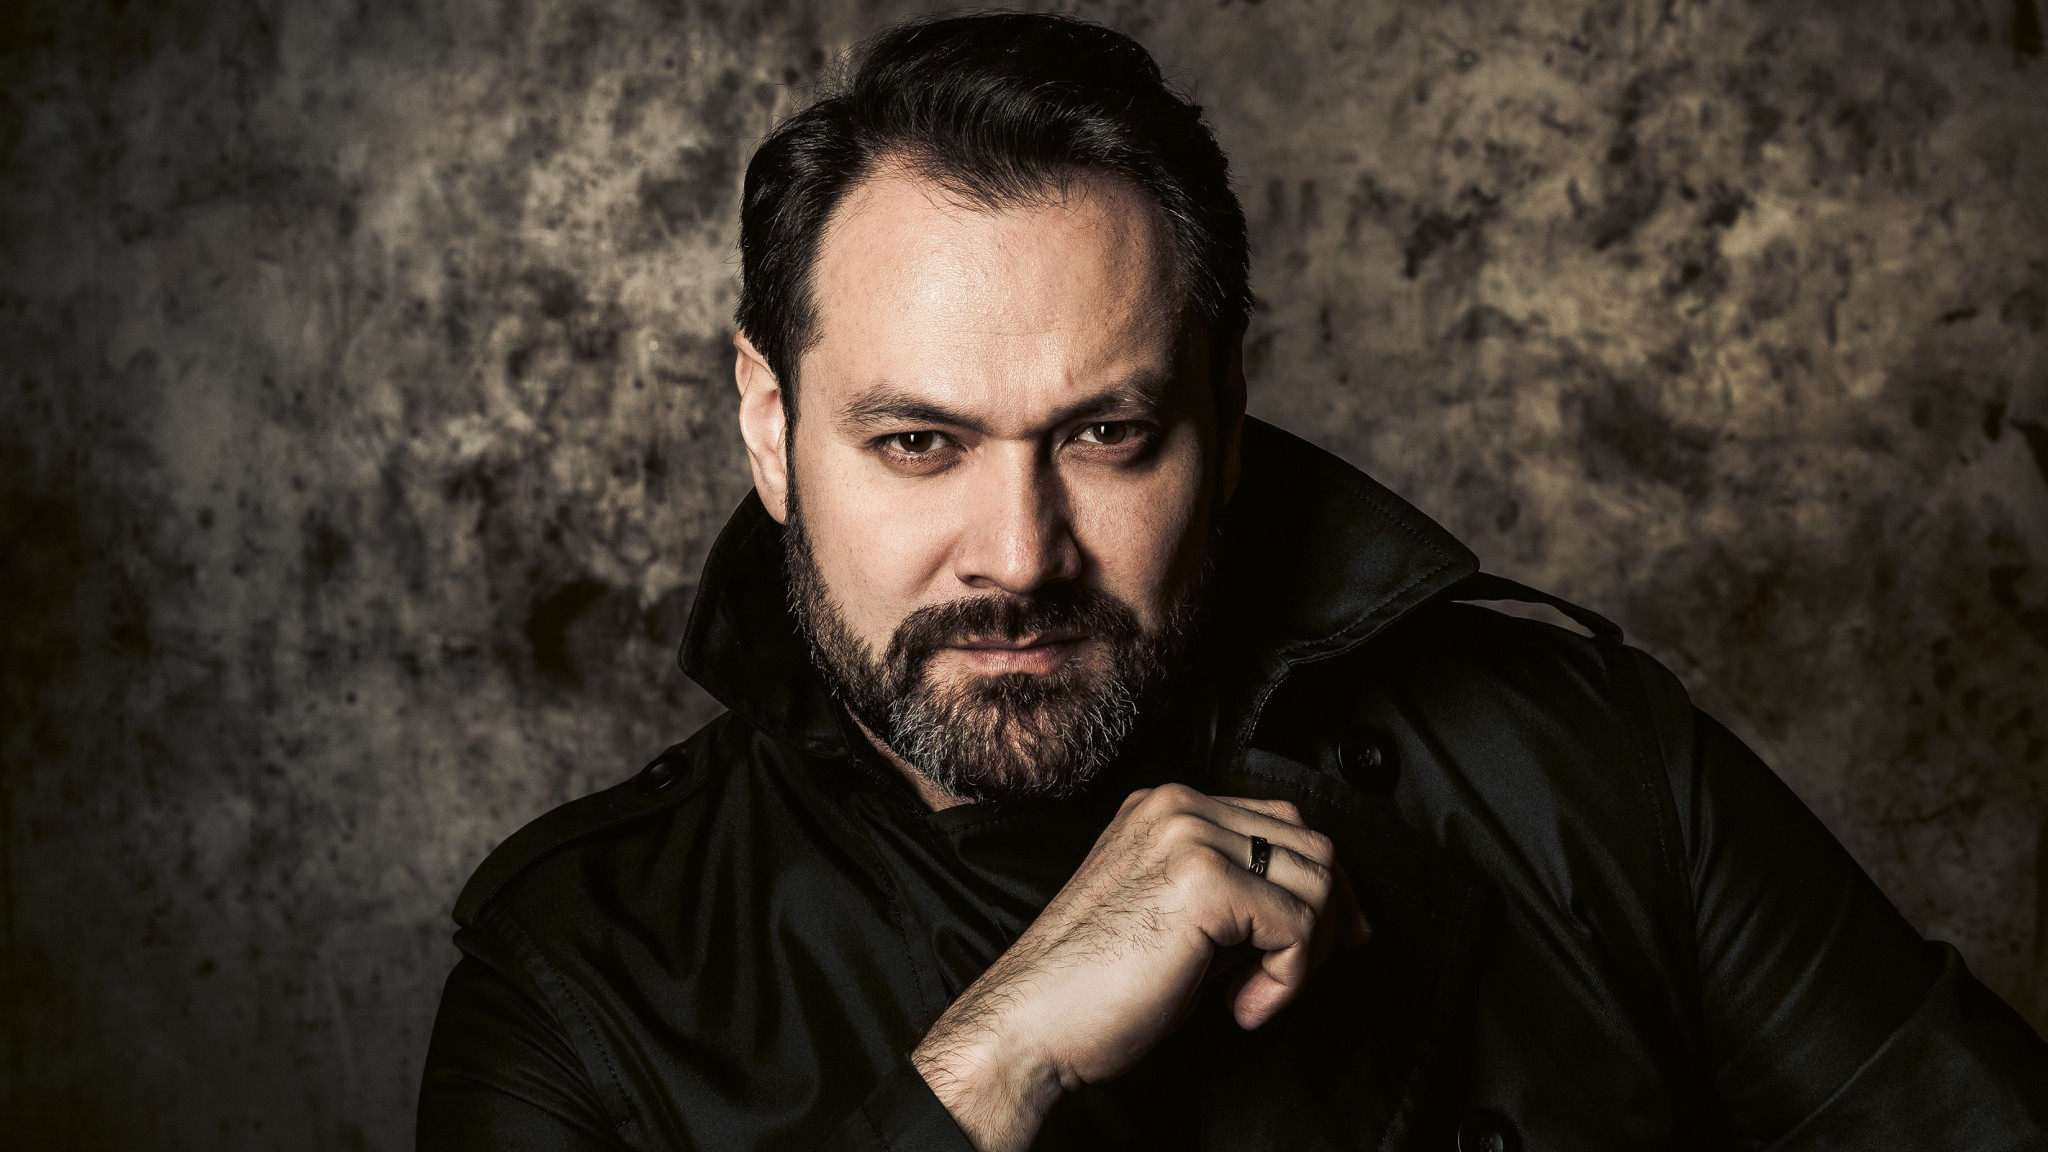 Schönklang mit Tiefgang - Ildar Abdrazakov glänzt auf seinem Debütalbum mit Verdi